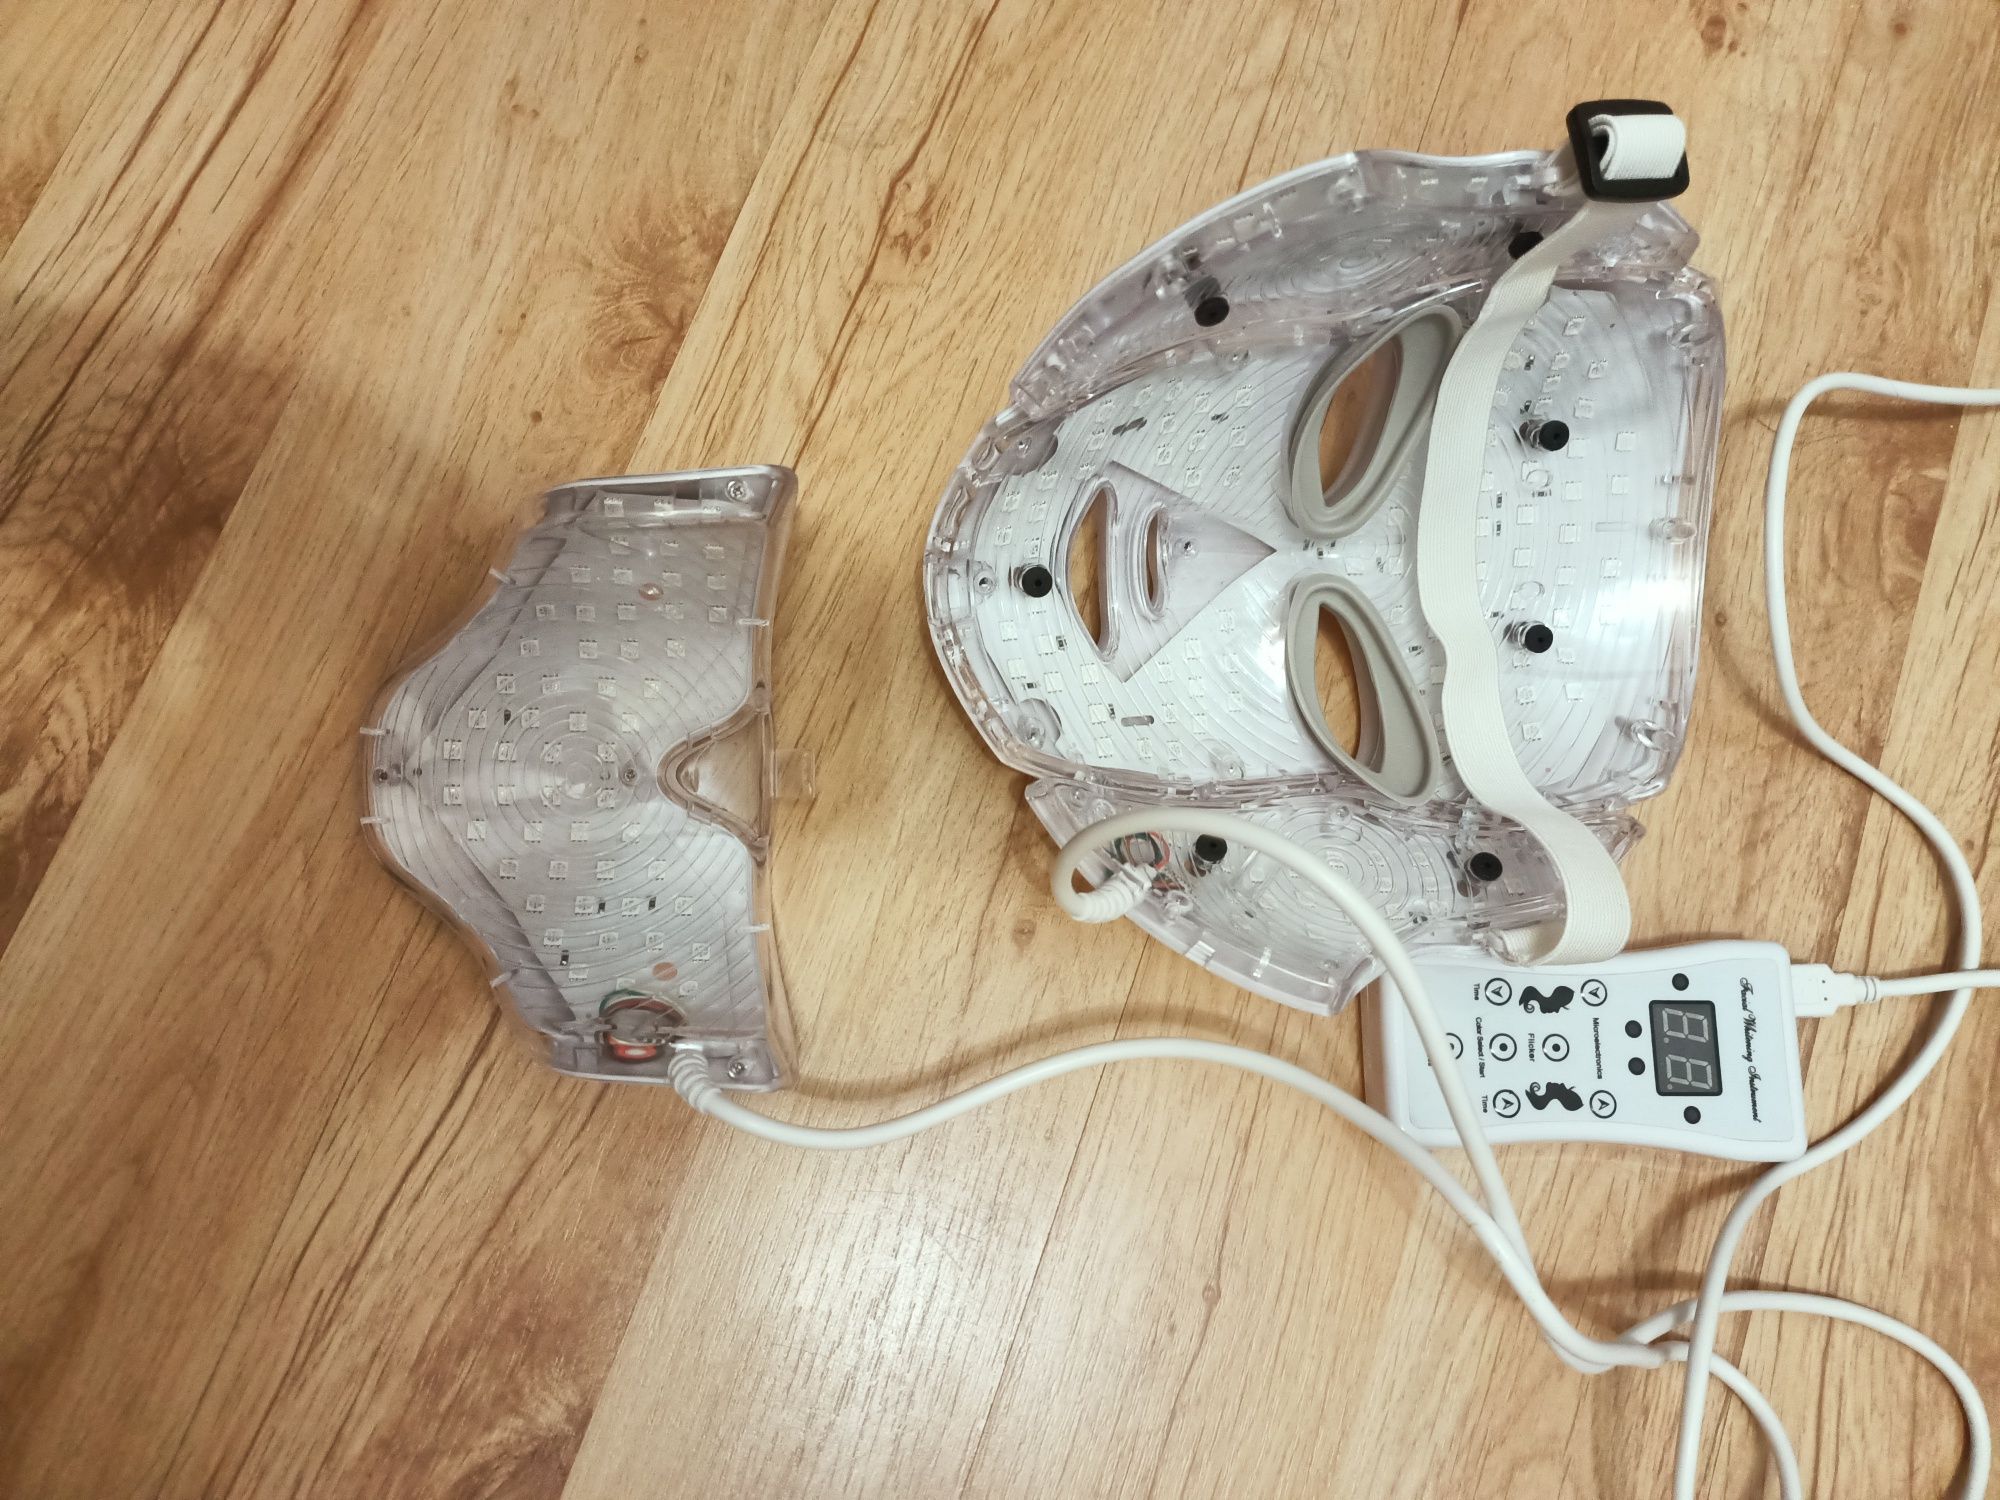 Maska LED na twarz i szyję
7 kolorów+ elektrostymulacja